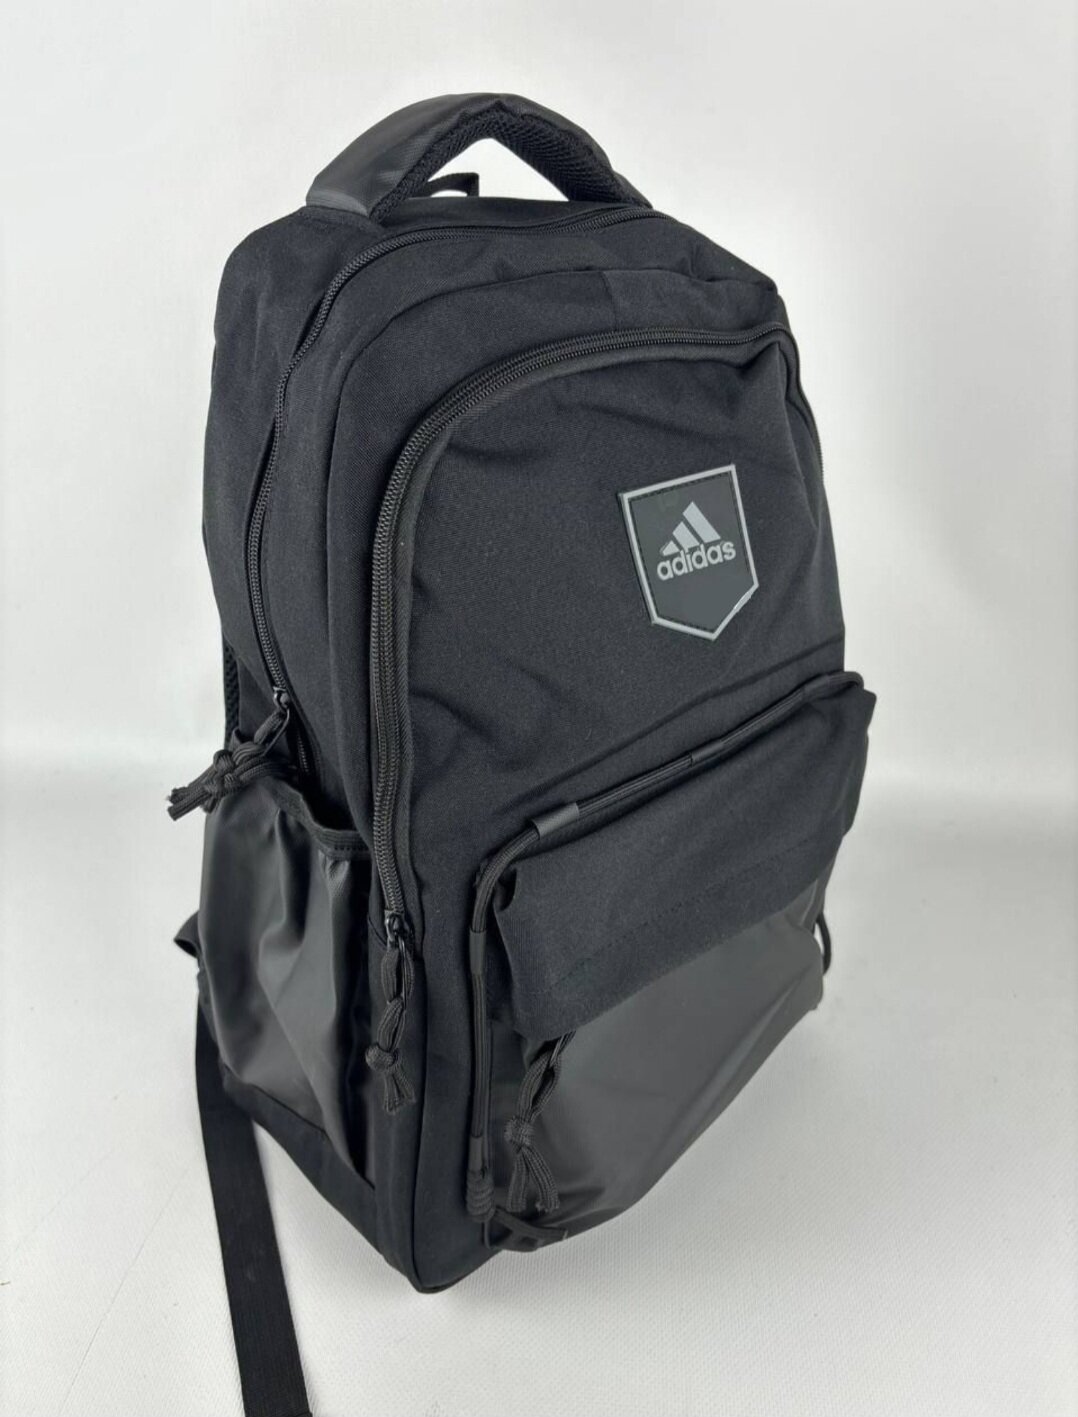 Рюкзак Adidas черный вместительный городской/спортивный, унисекс для учебы, работы, путешествий, 47×17×30 см